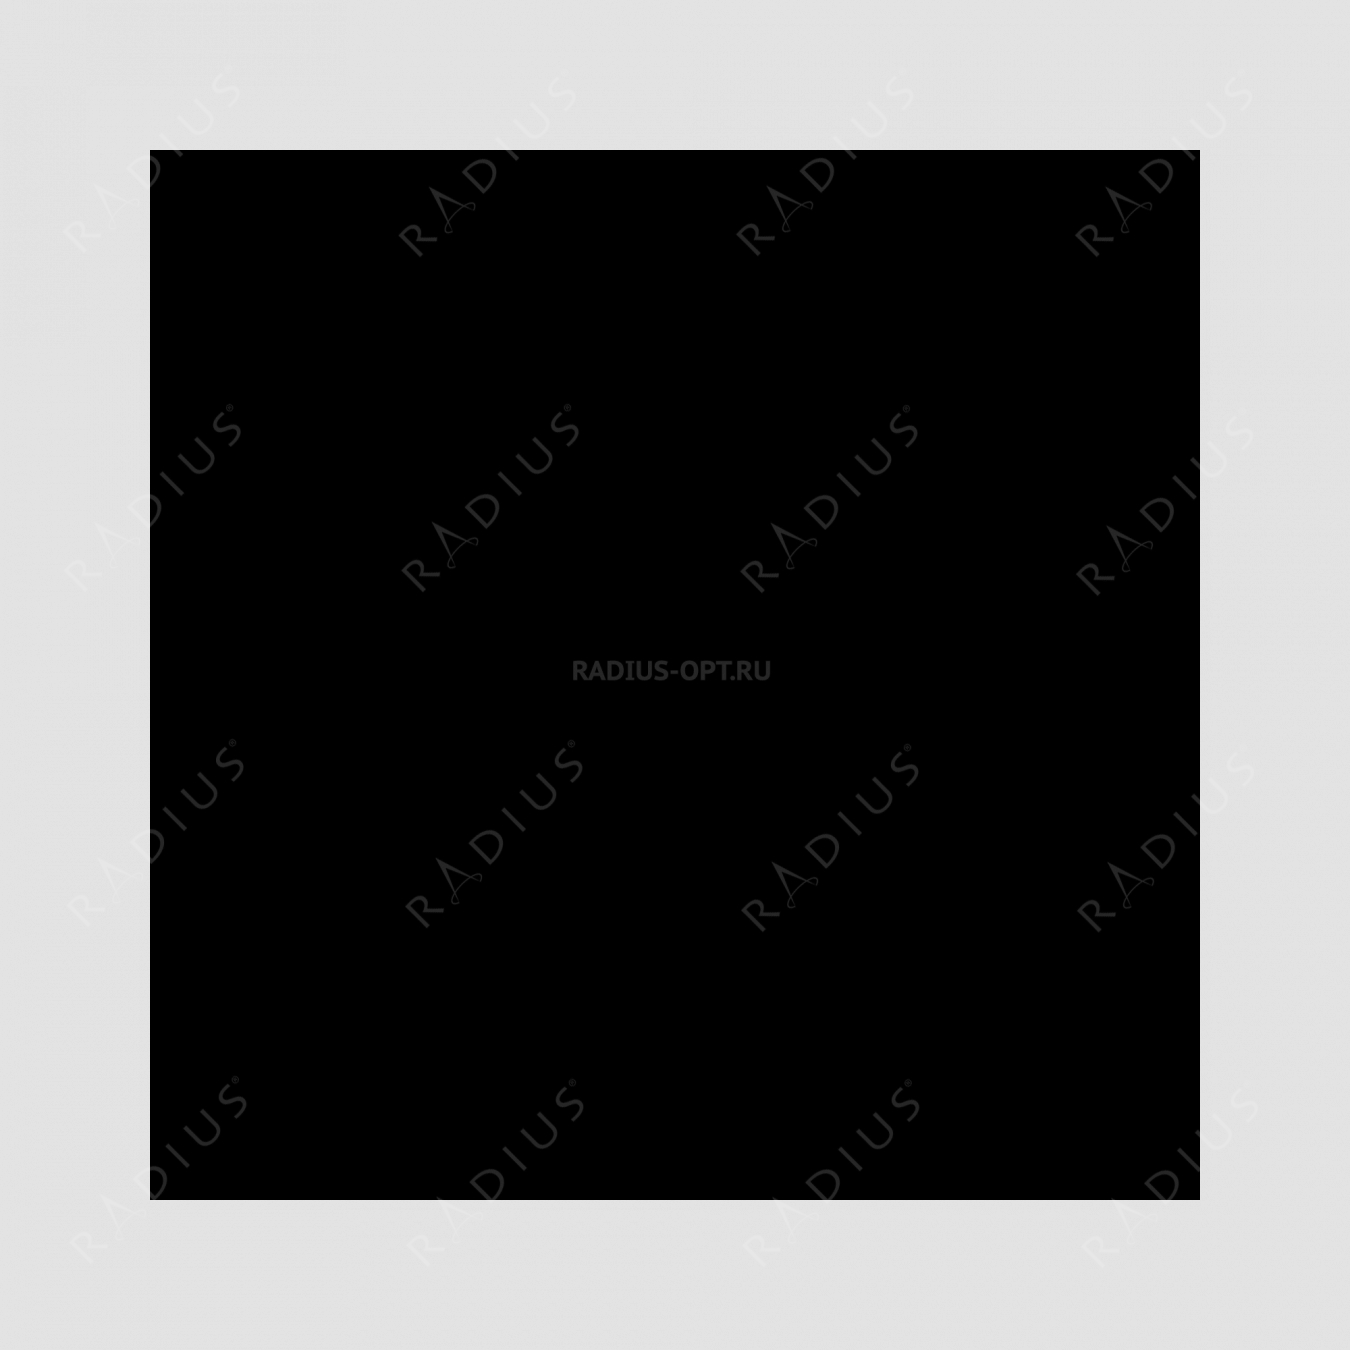 Кастрюля с крышкой, диаметр 28 см, объем 6,1 л, чугун с эмалированным покрытием, цвет темно-серый, серия Taupe, INVICTA, Франция